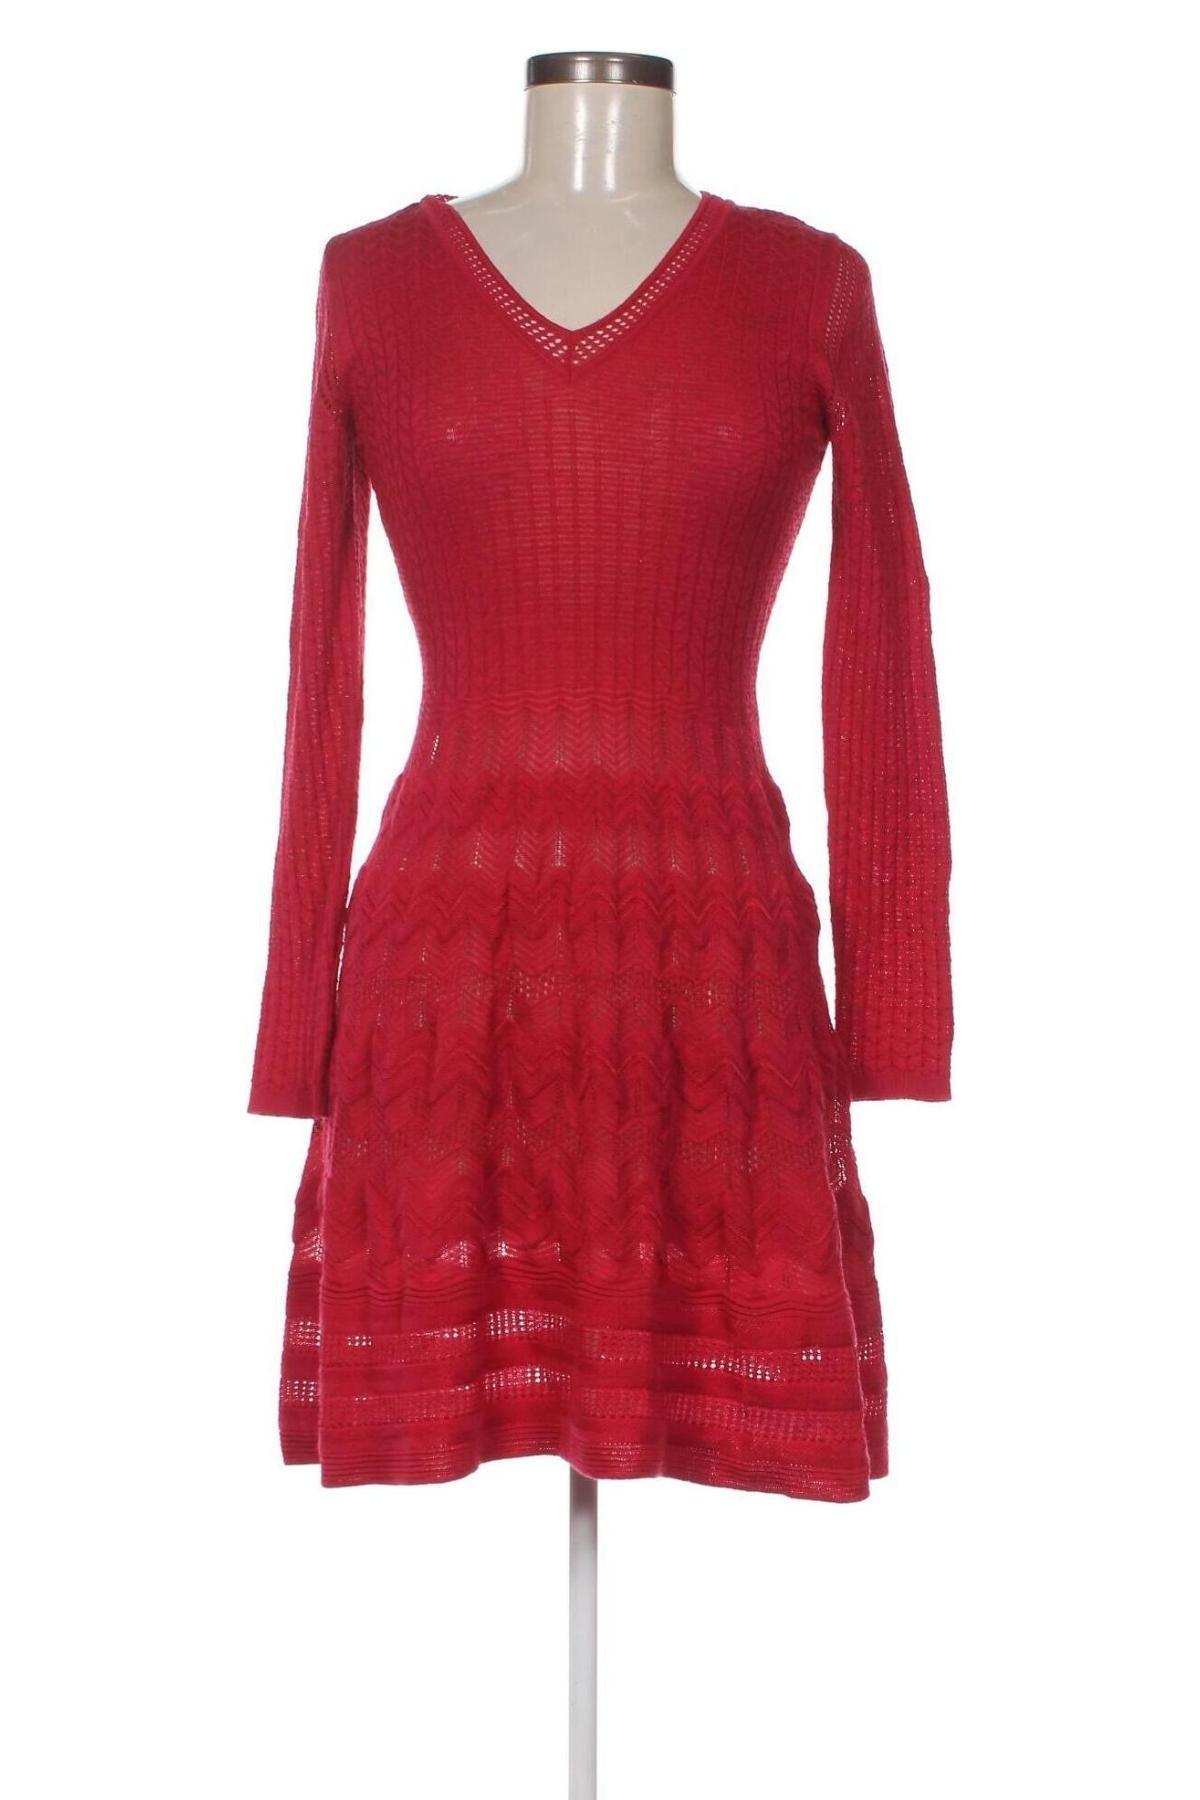 Φόρεμα M Missoni, Μέγεθος S, Χρώμα Κόκκινο, Τιμή 90,93 €